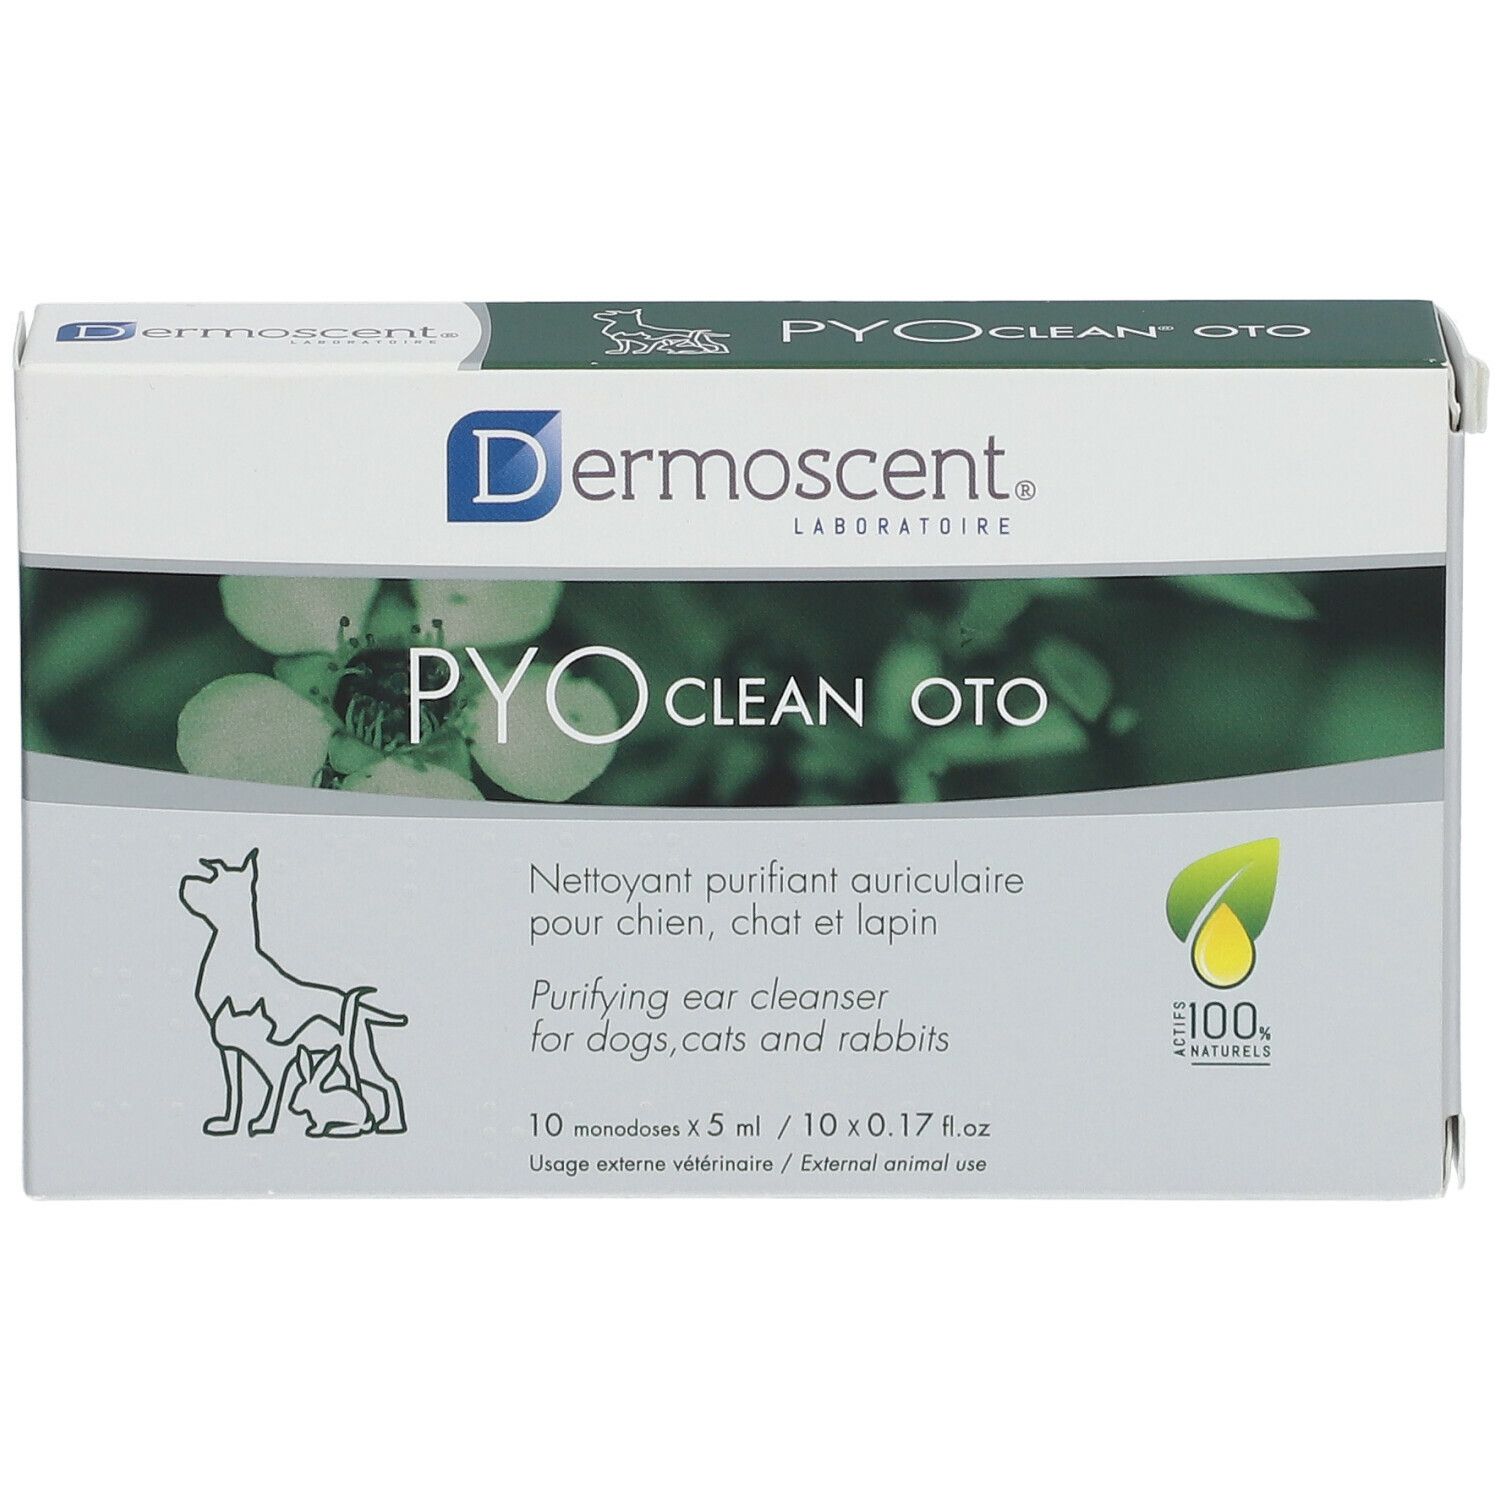 Dermoscent Pyo Clean Oto 10x5 ml